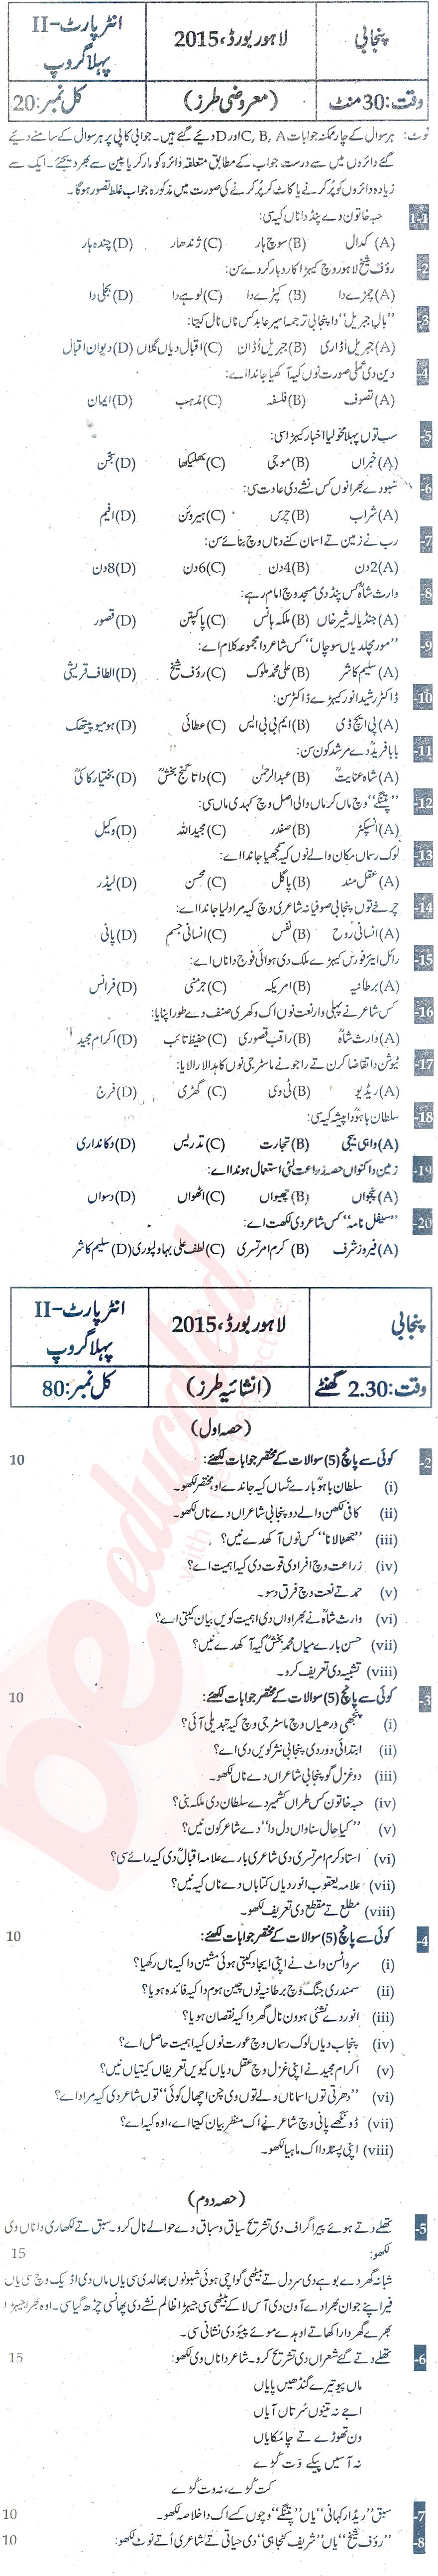 Punjabi FA Part 2 Past Paper Group 1 BISE Lahore 2015